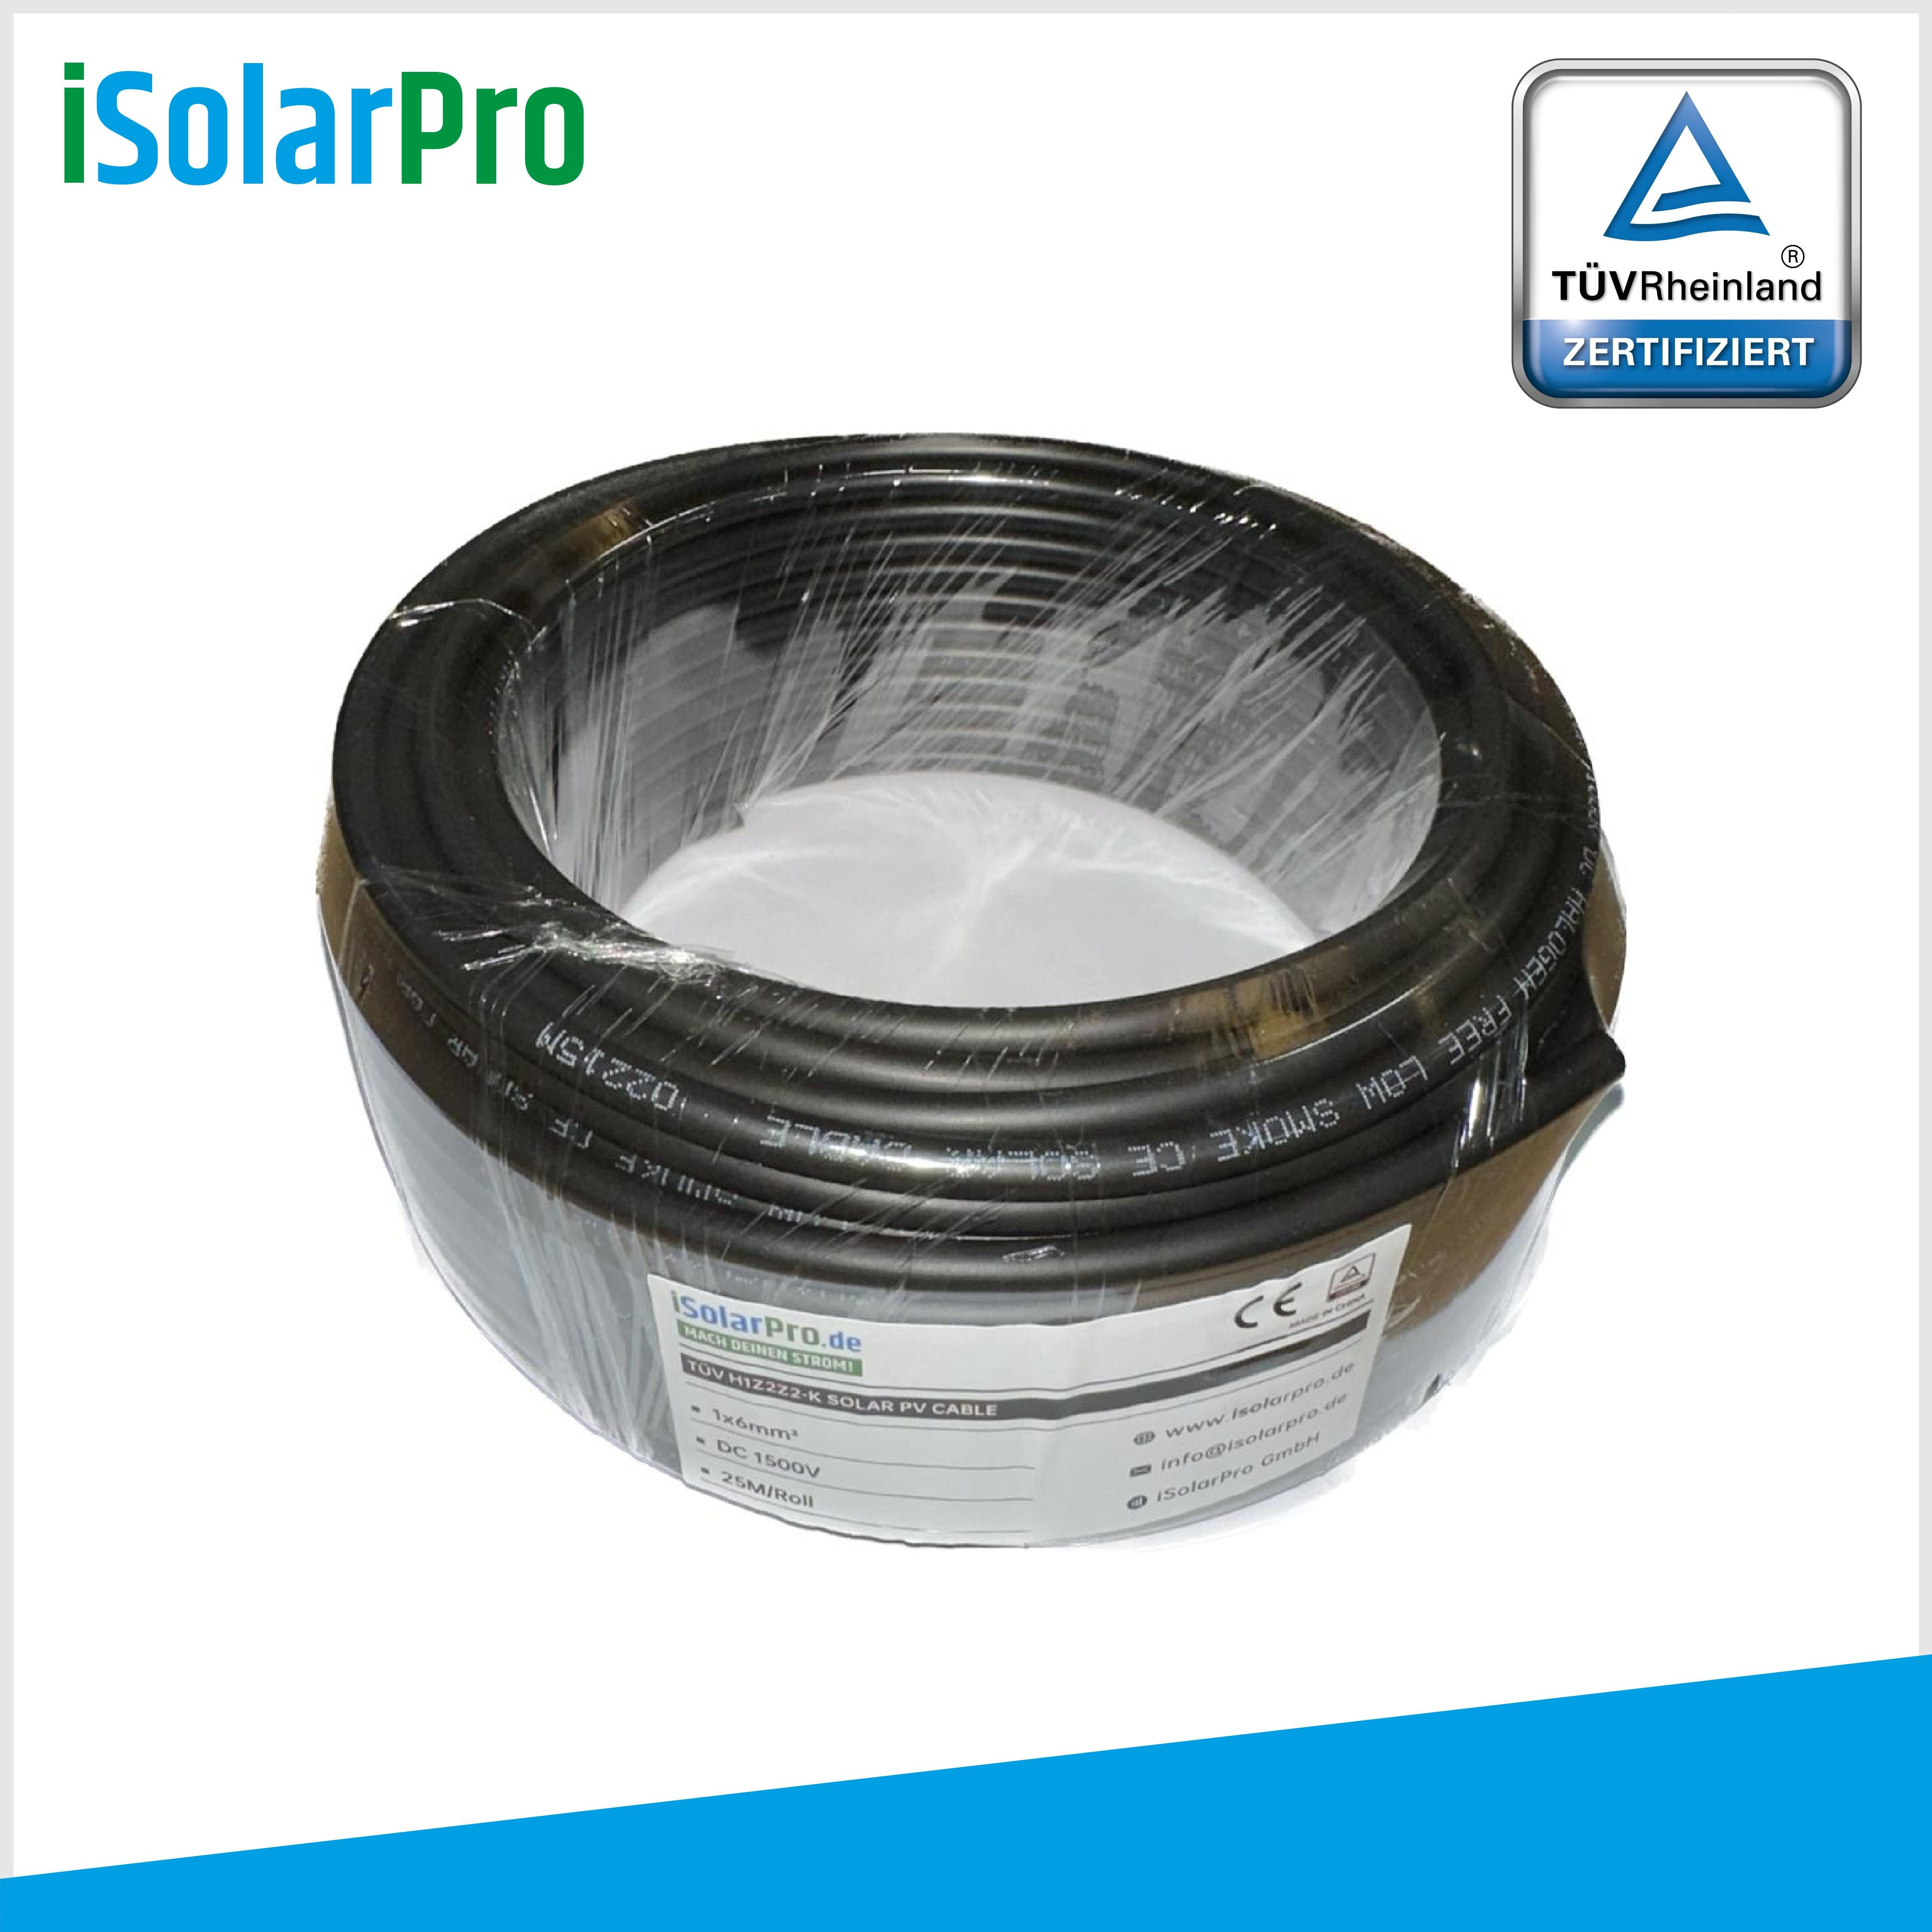 25m Solarkabel 6 mm² Photovoltaik Kabel für PV Anlagen schwarz